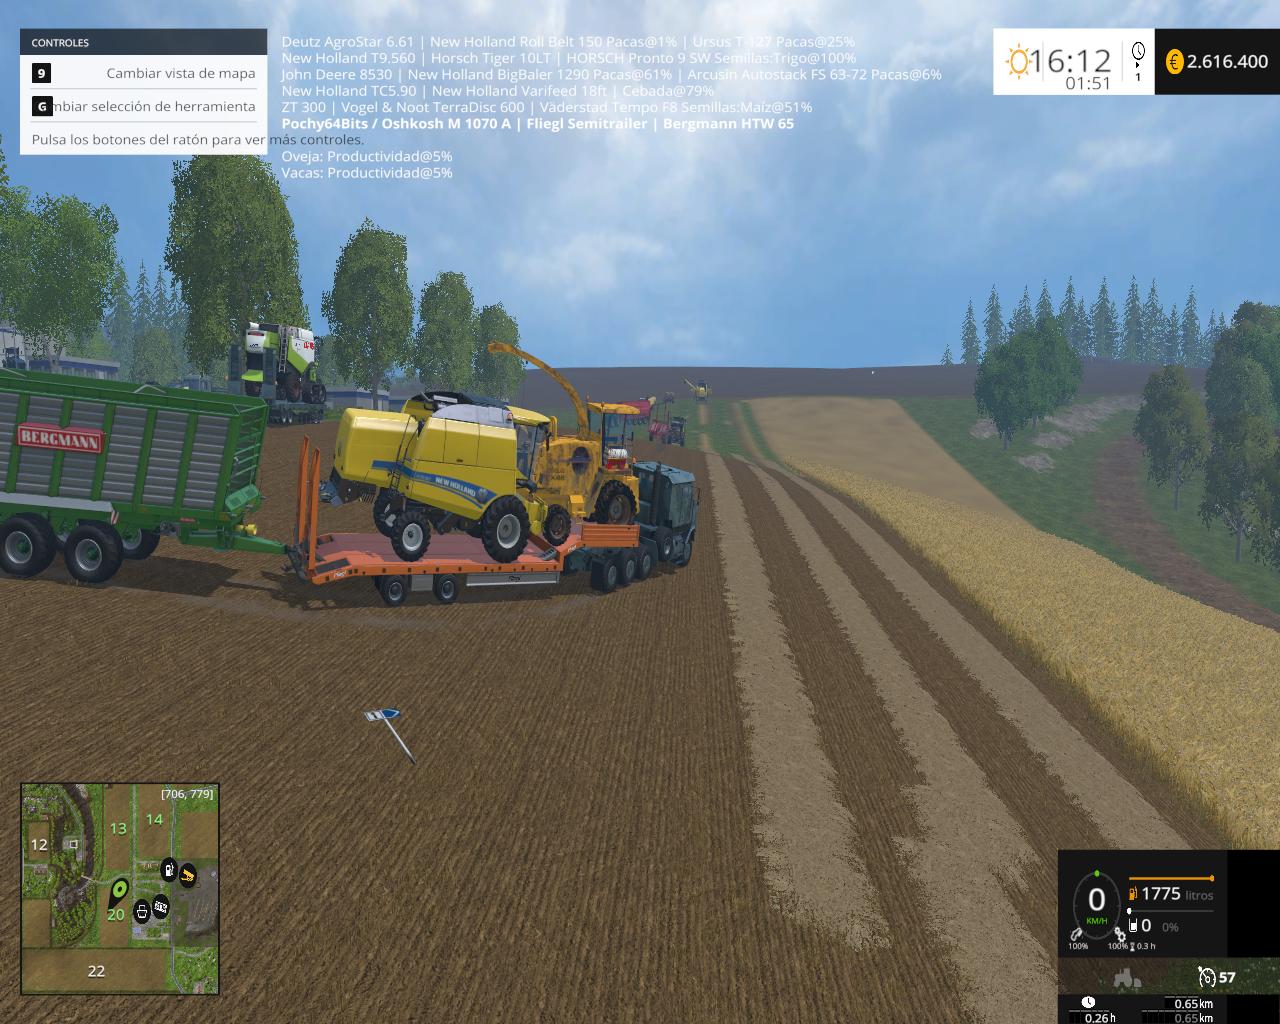 Fliegl Semi Trailer Especial V10 • Farming Simulator 19 17 22 Mods Fs19 17 22 Mods 0620